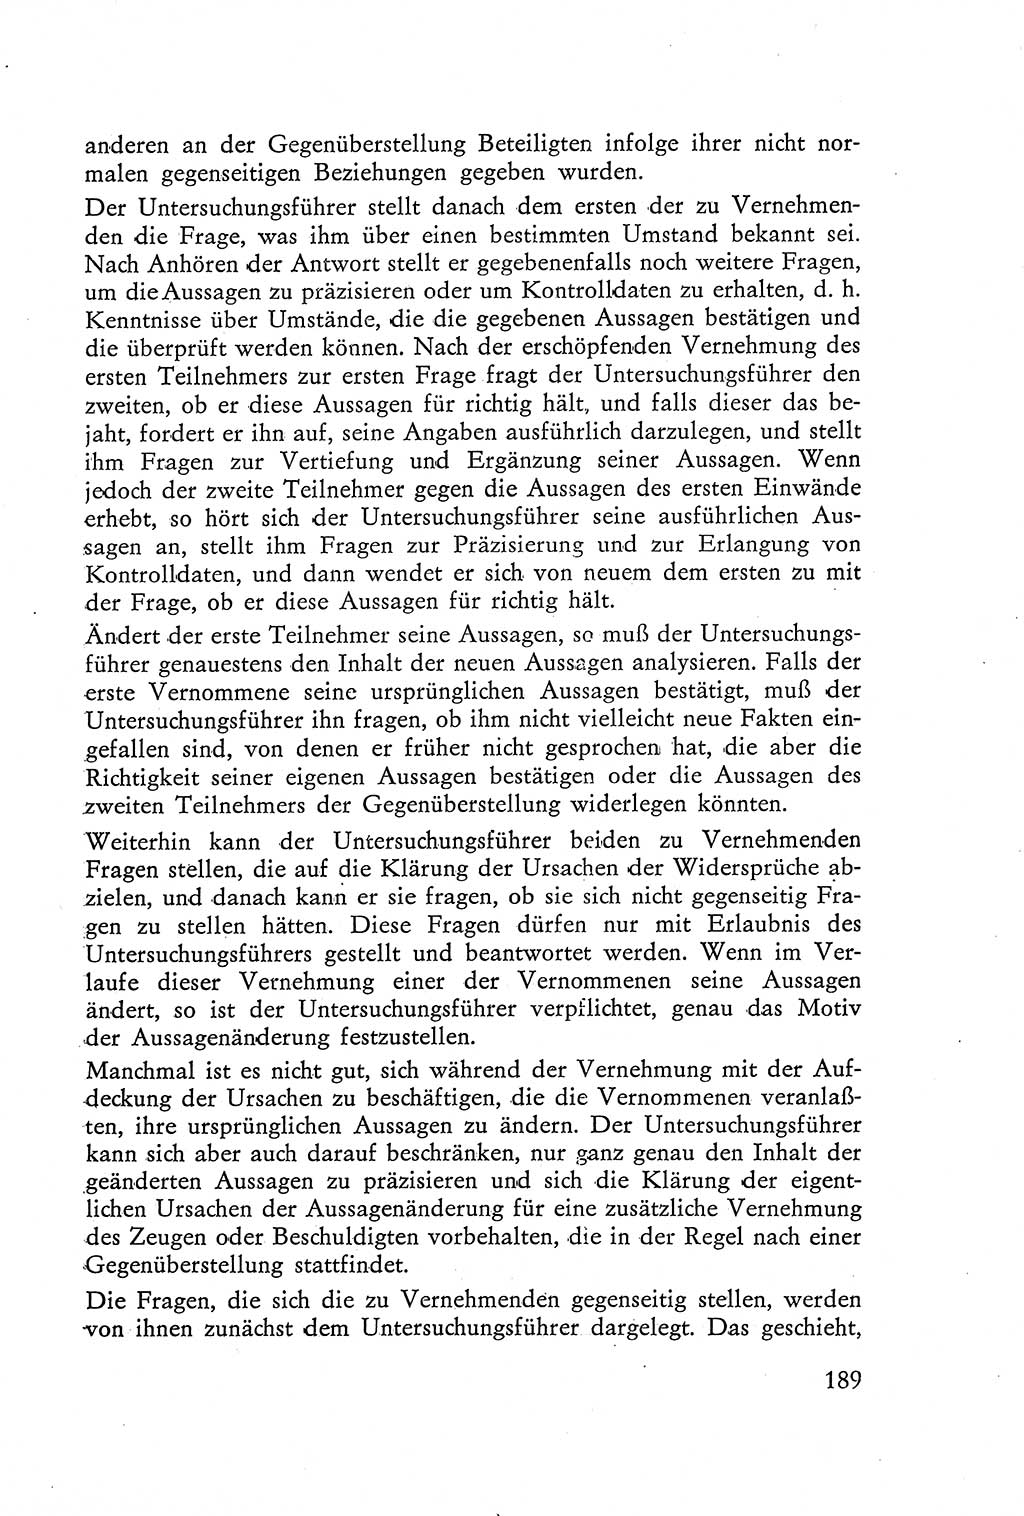 Die Vernehmung [Deutsche Demokratische Republik (DDR)] 1960, Seite 189 (Vern. DDR 1960, S. 189)